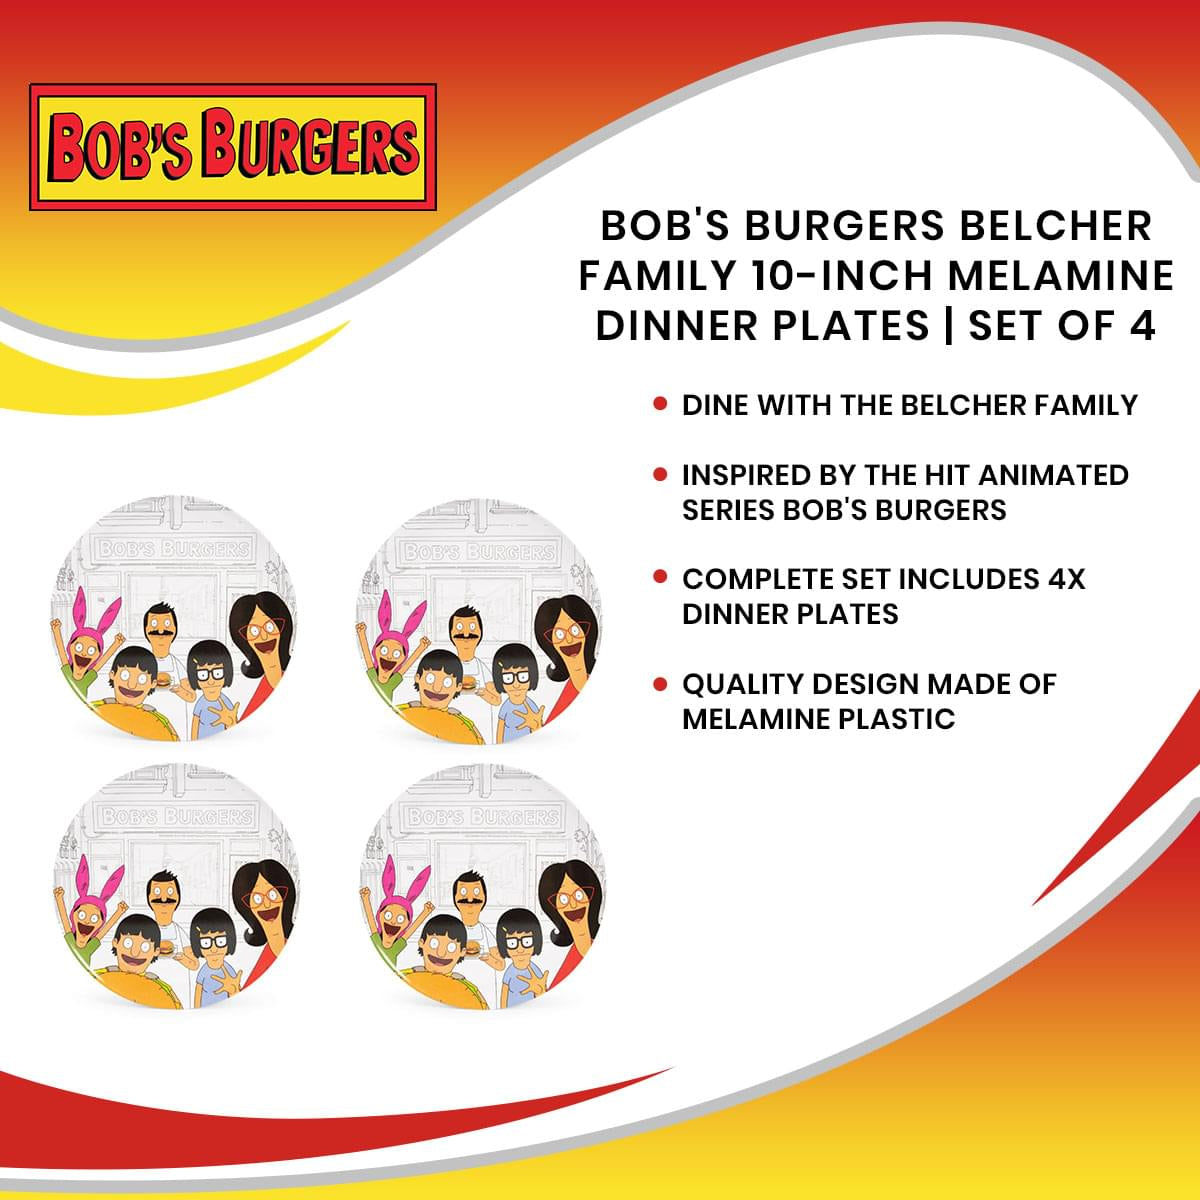 Bob's Burgers Belcher Family 10-Inch Melamine Dinner Plates | Set of 4